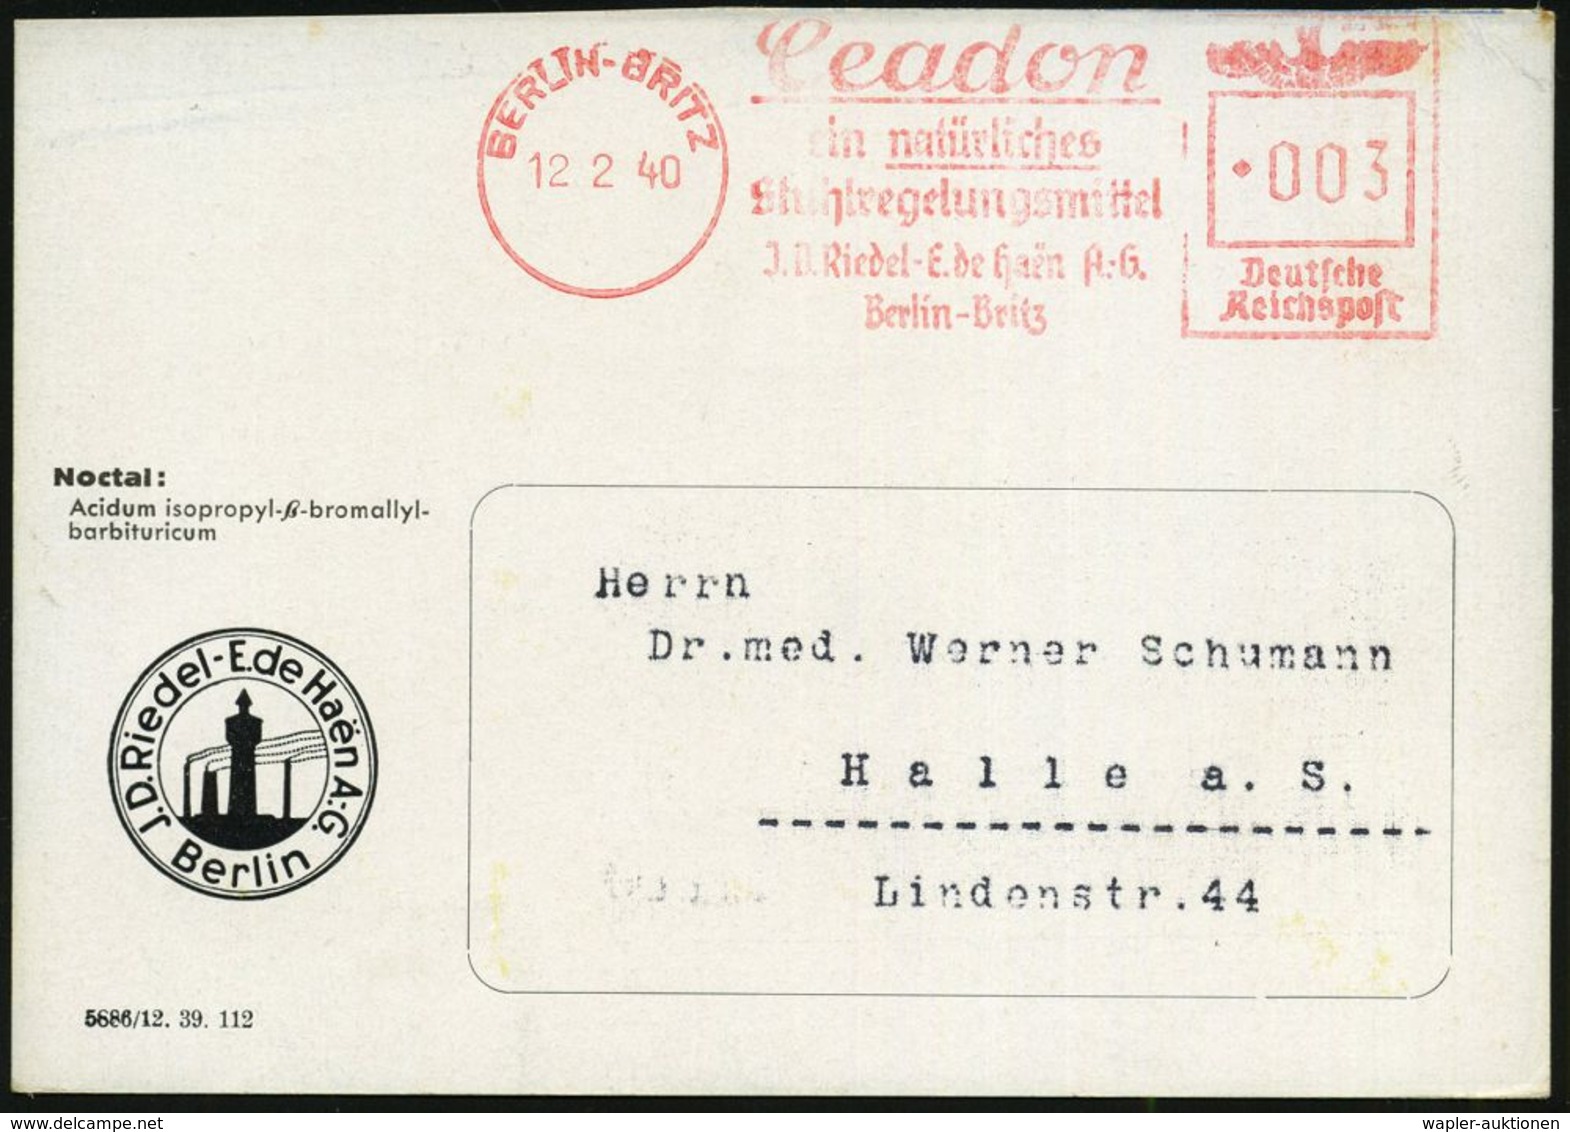 BERLIN-BRITZ #bzw.# BERLIN-BRITZ 1/ Ceadon/ Ein Natürliches/ Stuhlregelungsmittel/ J.D.Riedel-E.de Haen AG 1940 (Feb./Mr - Geneeskunde